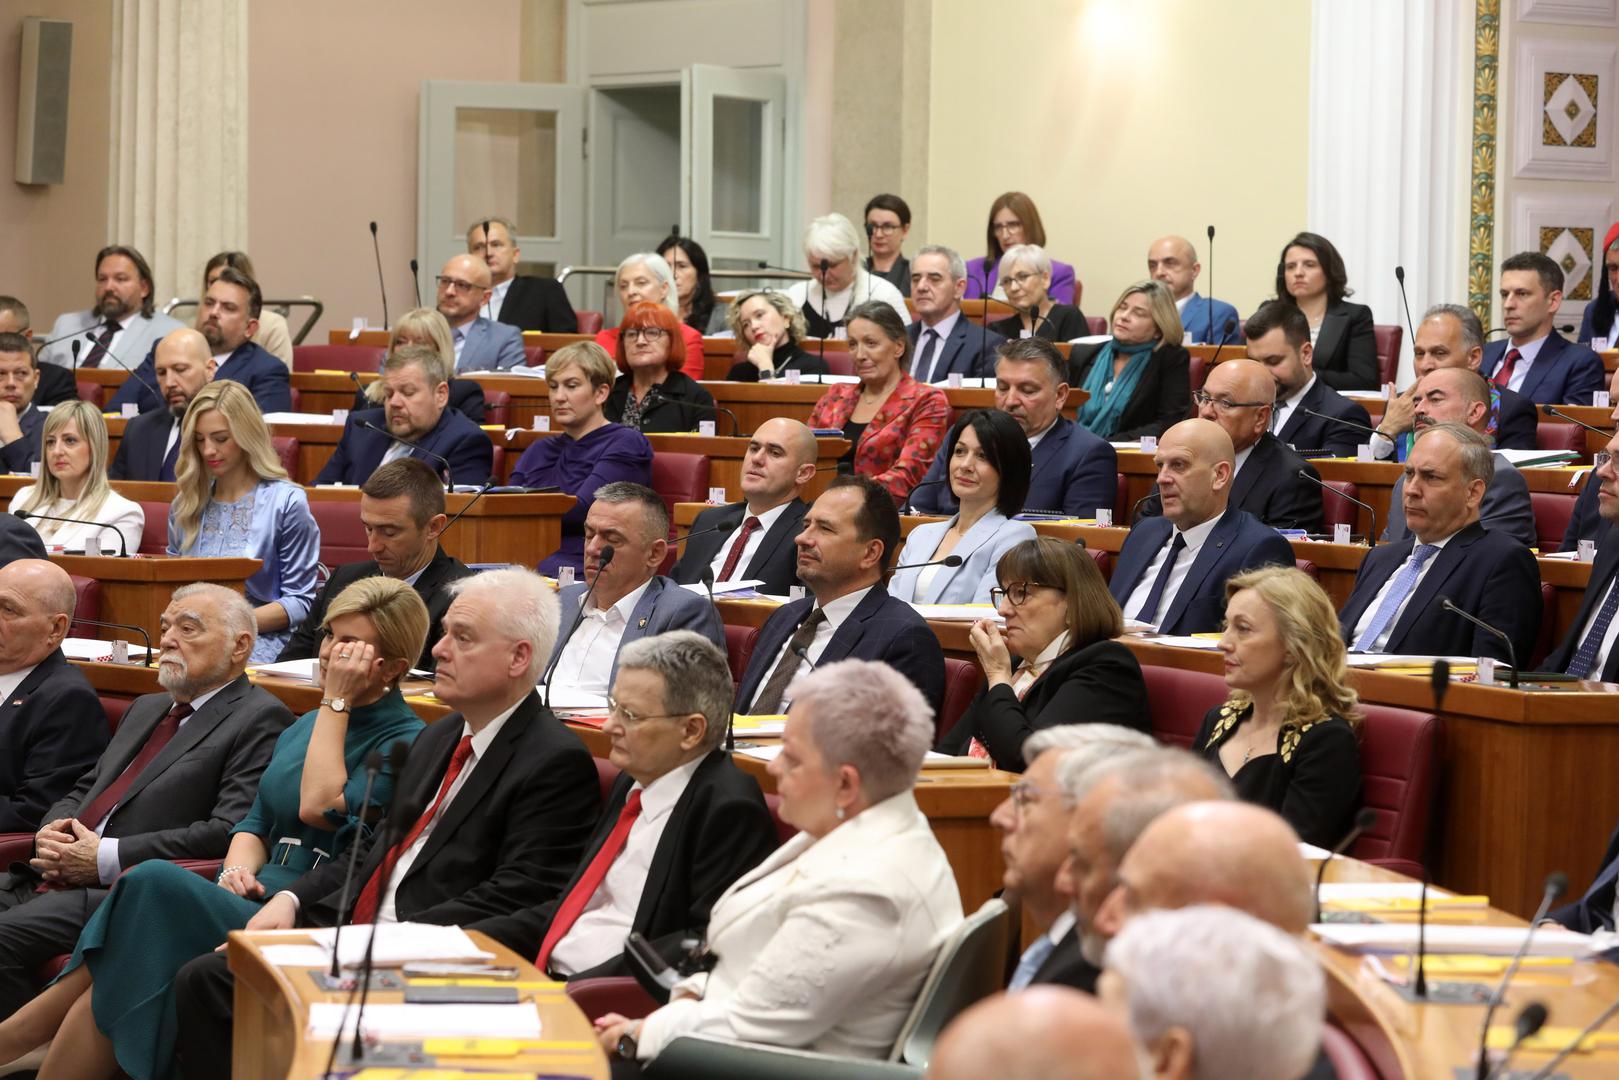 Ukupno 35 novoizabranih zastupnika u Hrvatski sabor dalo je ostavku ili stavilo mandat u mirovanje zbog obnašanja dužnosti koja je nespojivu sa zastupničkom dužnošću pa će u Sabor njihove zamjene.